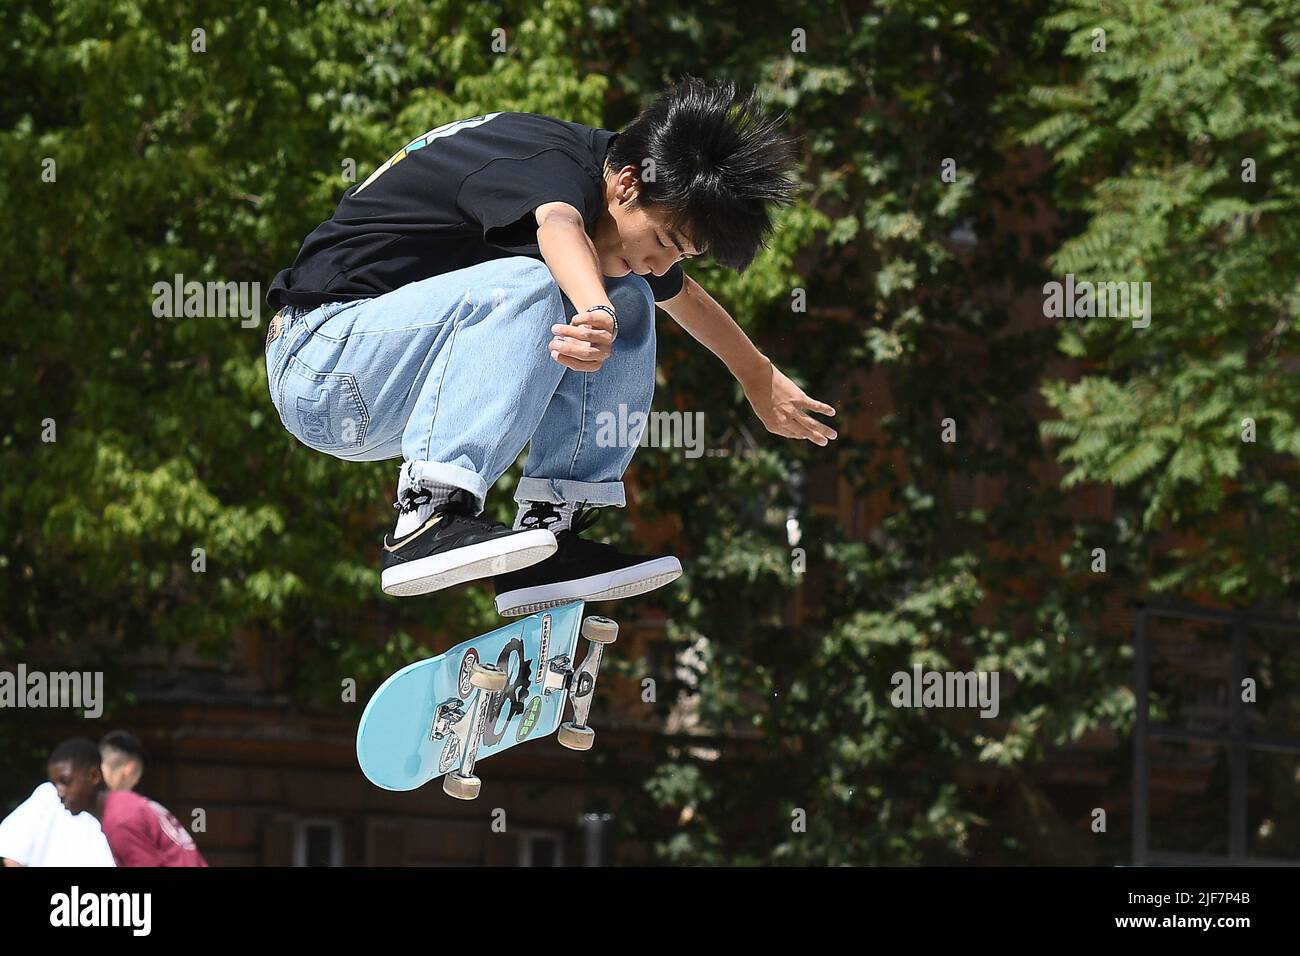 28th 2022. Yuto Horigome during Street Skateboarding, Roma, Italia, at the Colle Oppio